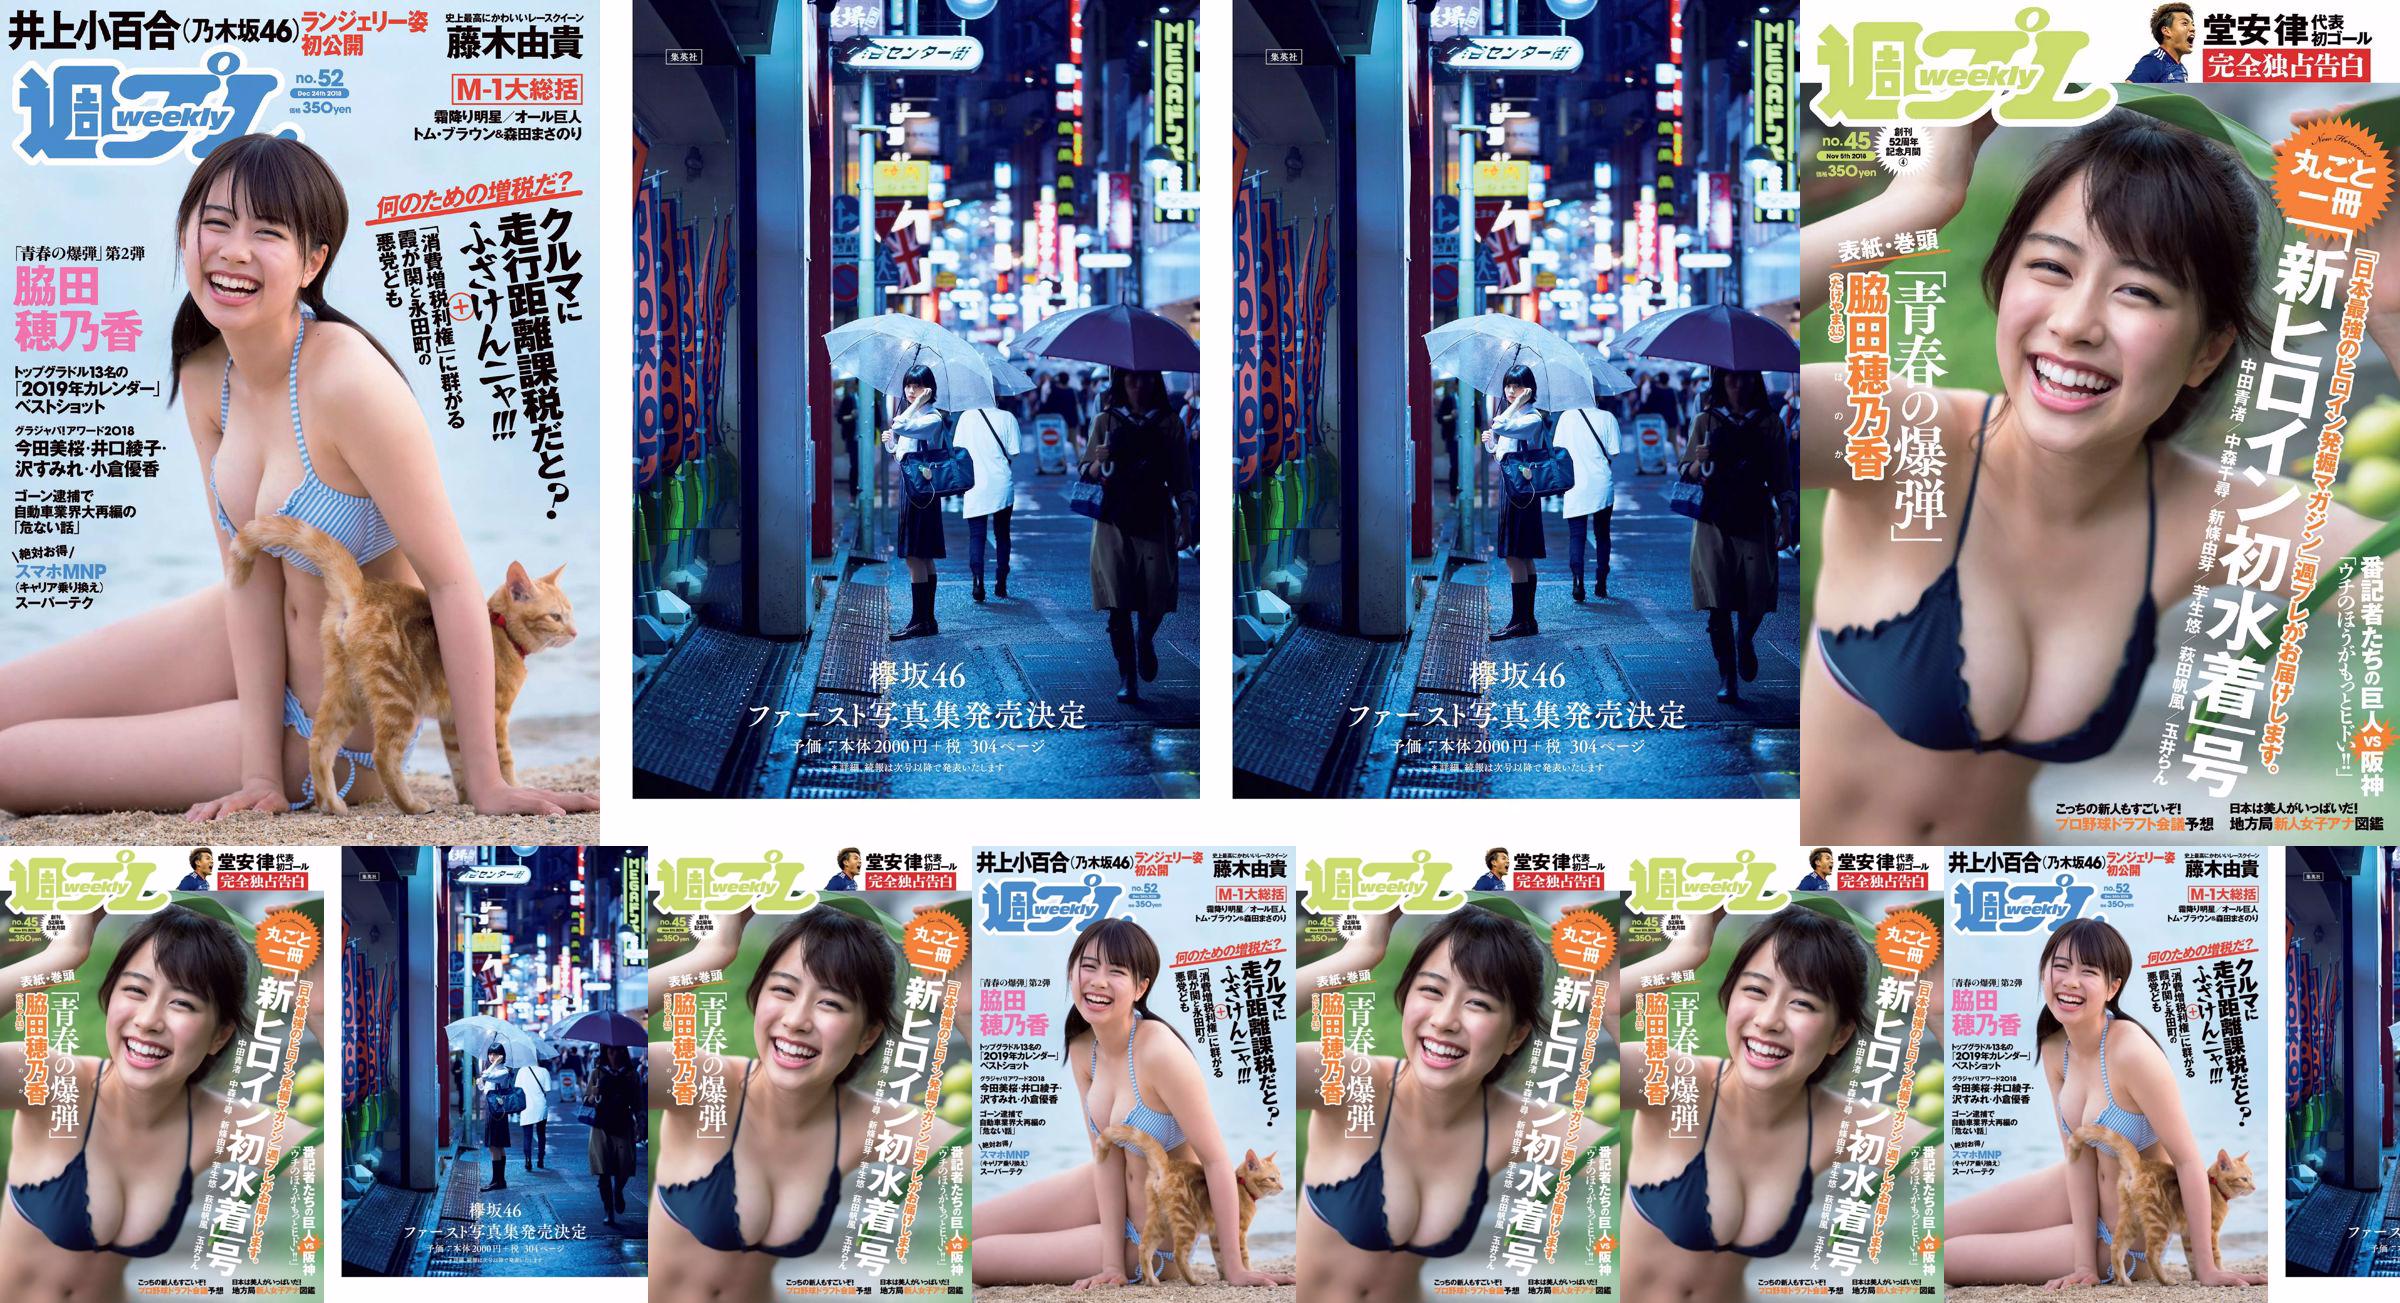 Wakada Honoka, Inoue Sayuri, Mizusawa Yuno, Fujiki Yuki, Koizumi Haruka, Kaito みらい, Tachiki Ayano [Weekly Playboy] นิตยสารภาพถ่ายฉบับที่ 52 ประจำปี 2018 No.ab134c หน้า 1